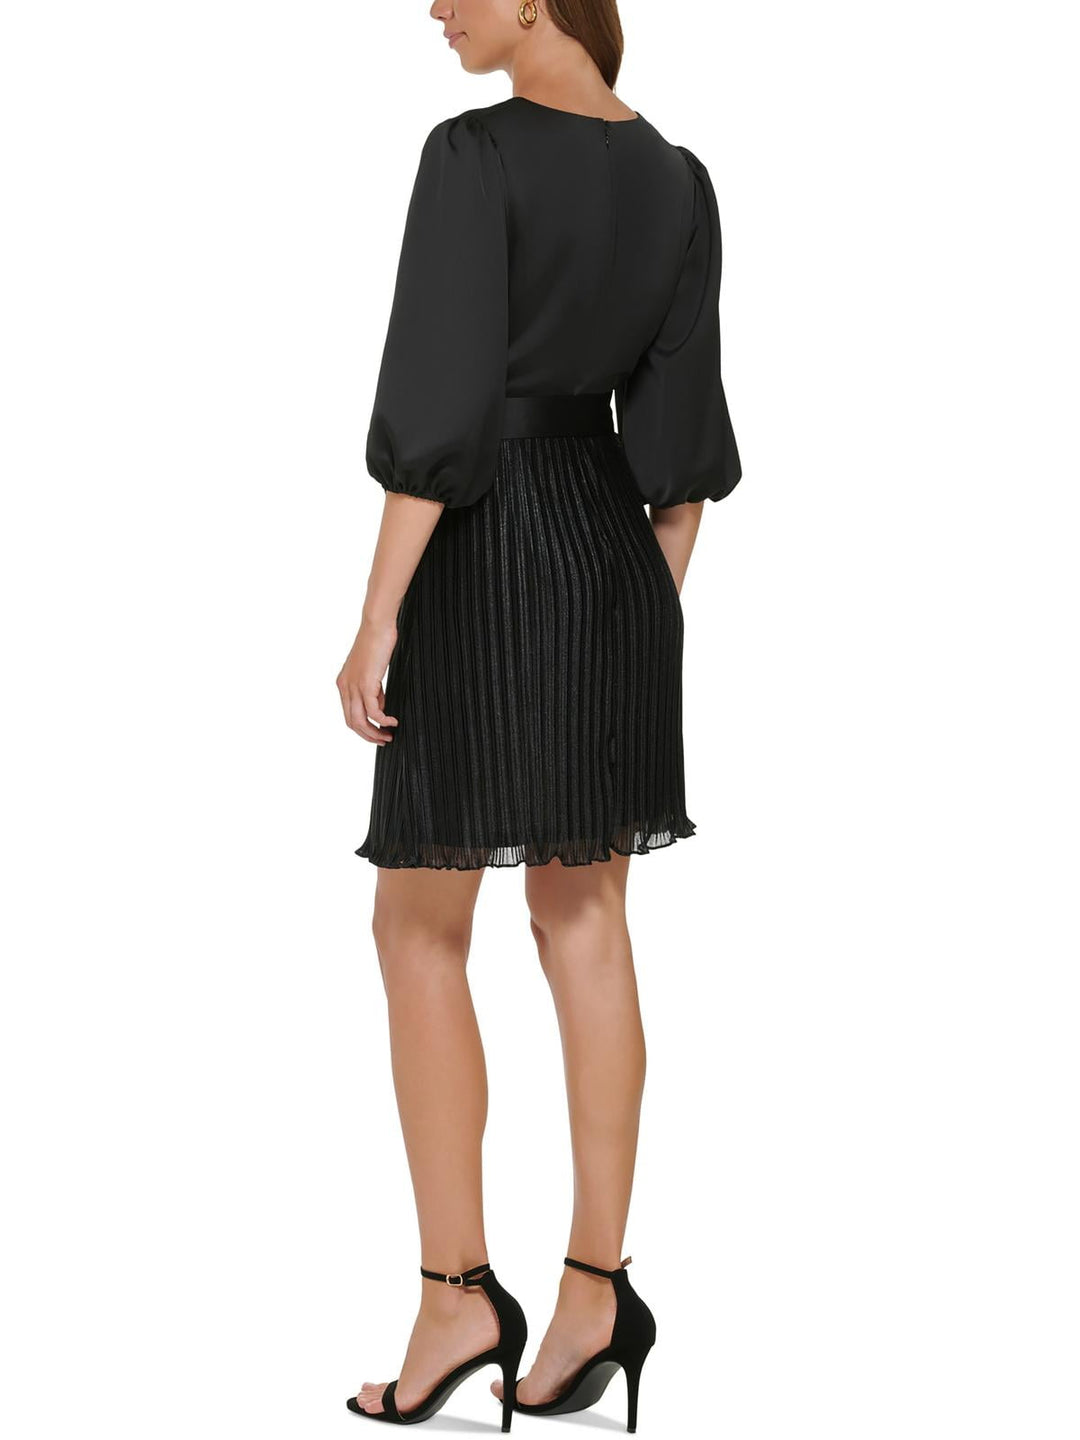 DKNY Women's Pleated Mini Fit & Flare Dress Black Size 6